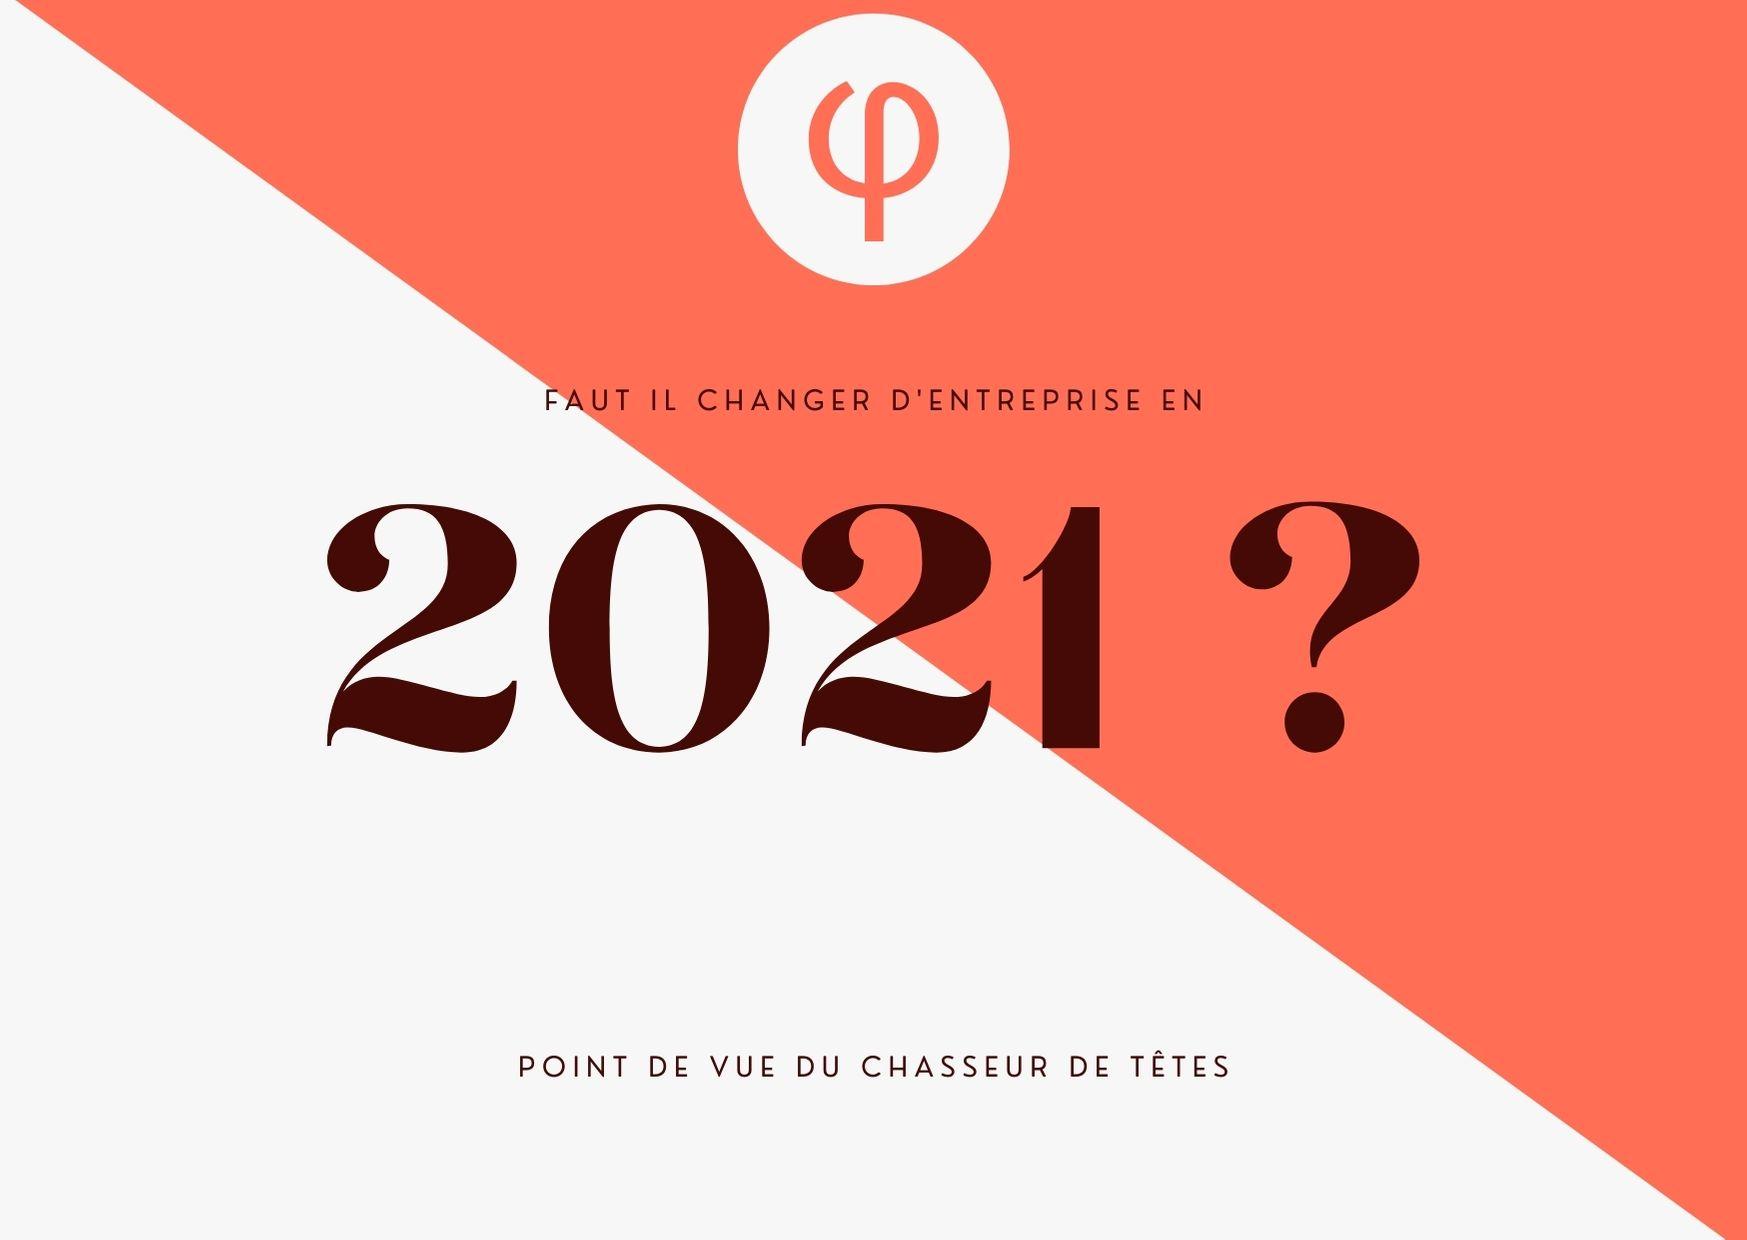 Faut il changer d’entreprise en 2021 ? point de vue du chasseur de têtes